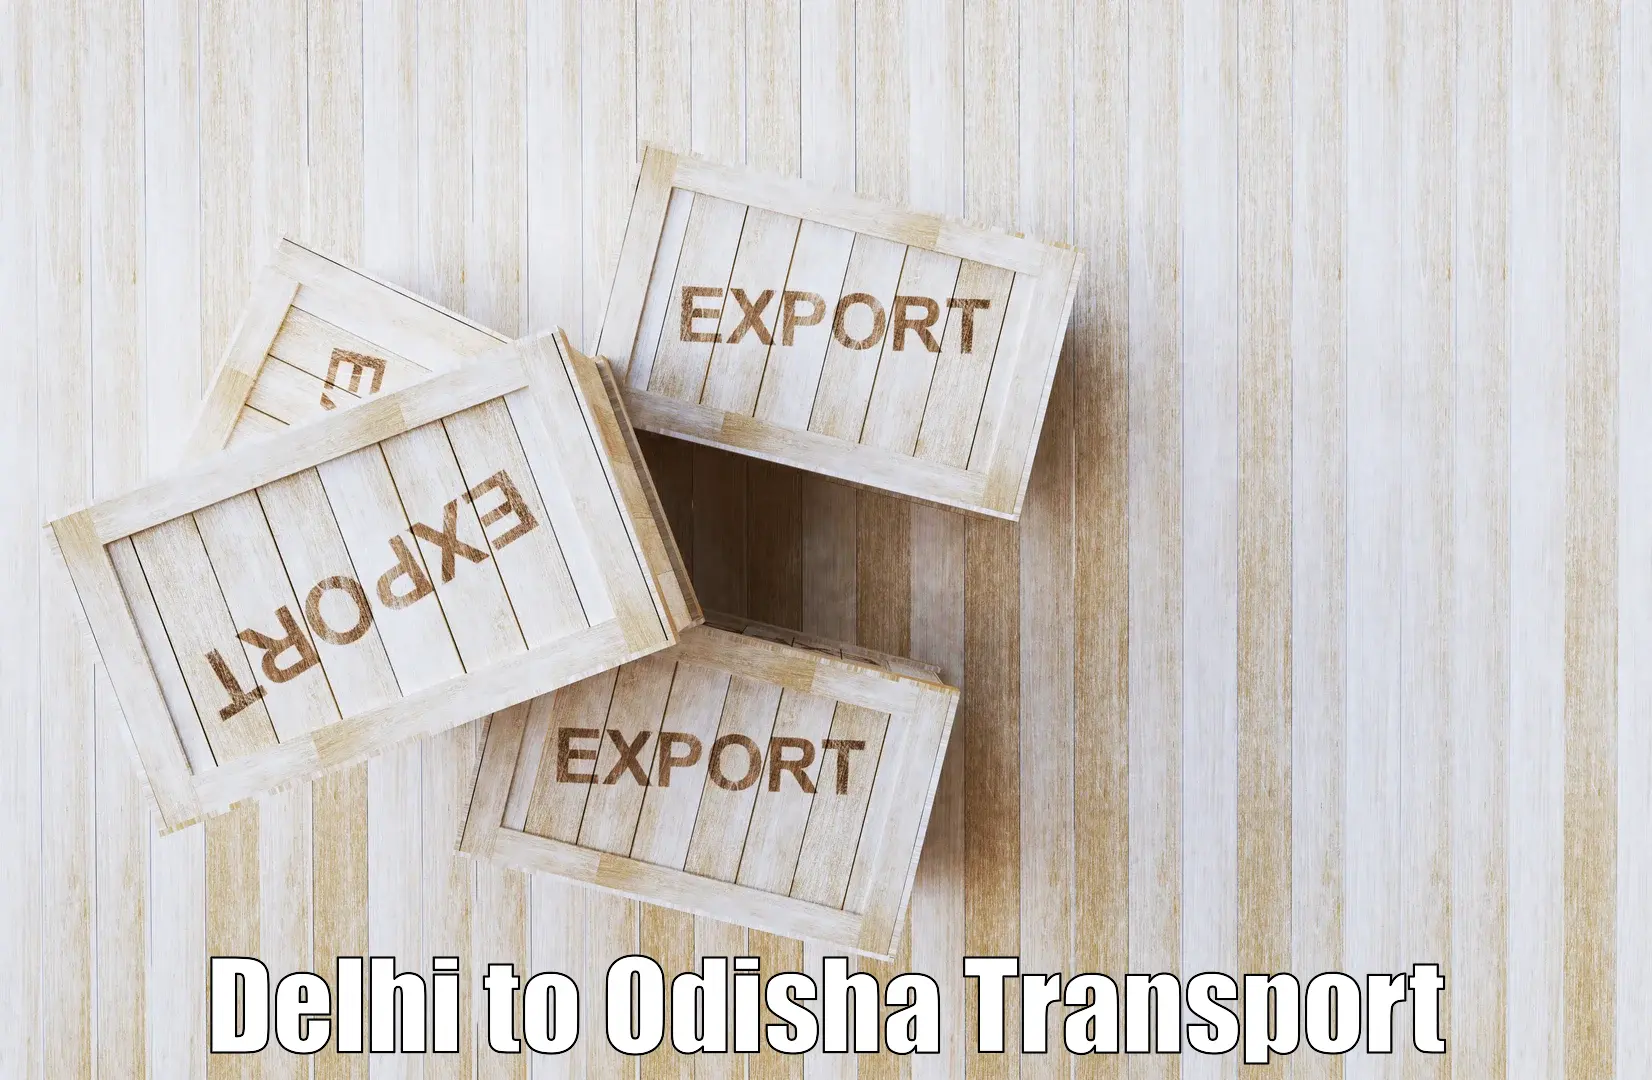 Nearby transport service Delhi to Ukhunda